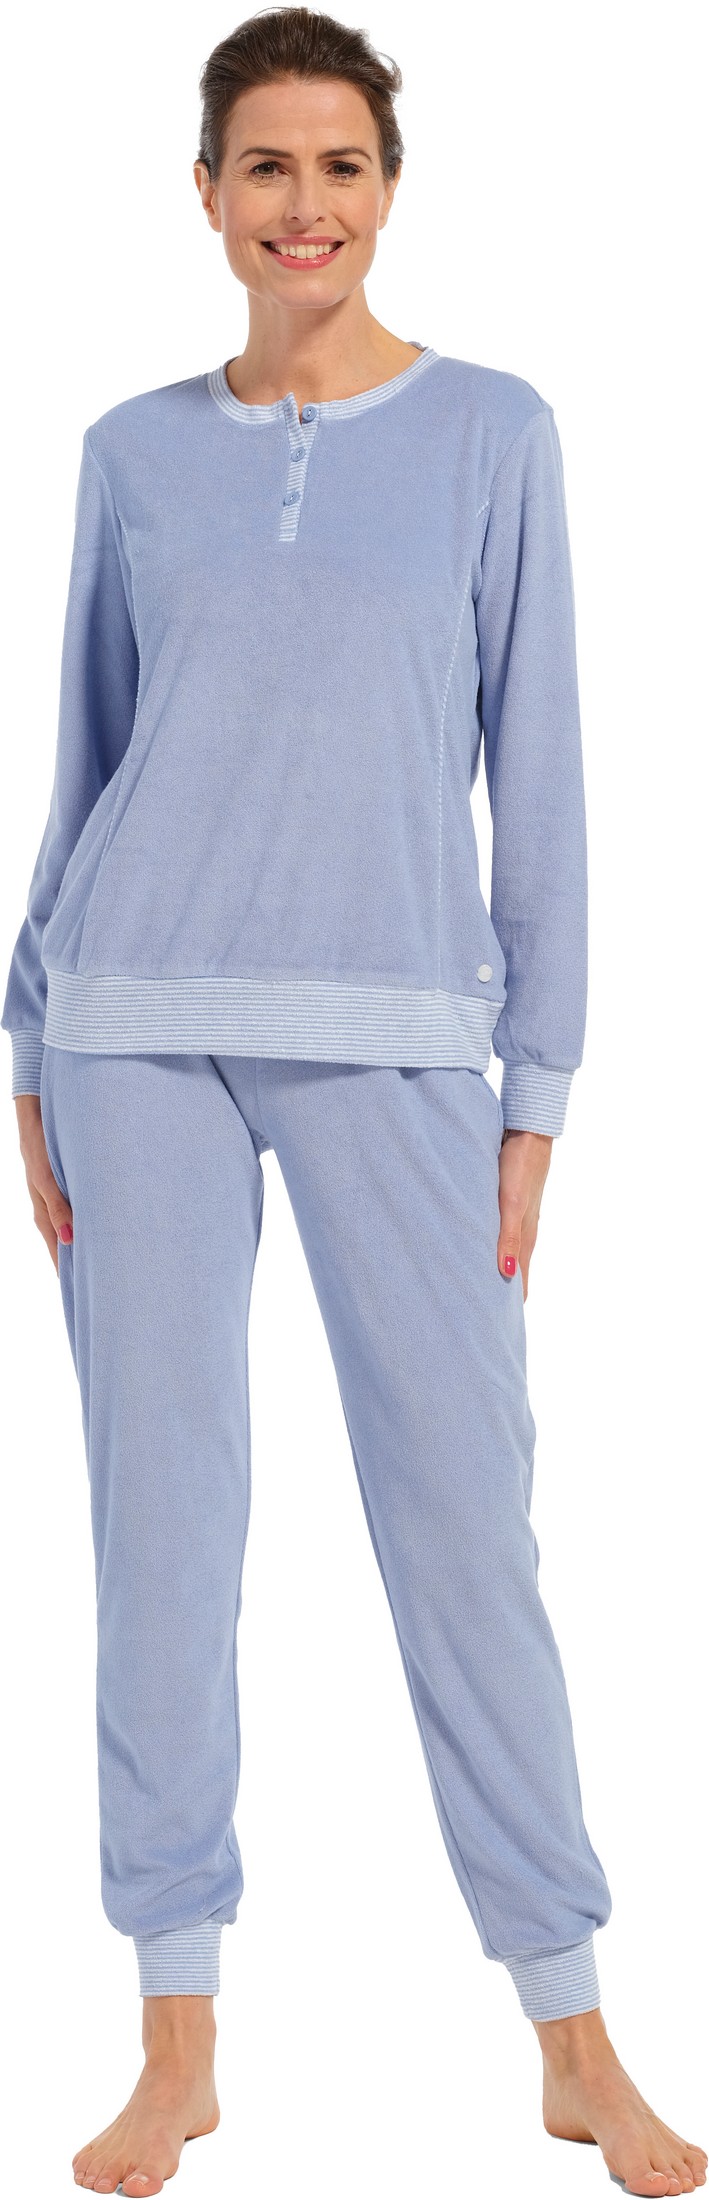 Pastunette dames badstof pyjama 20232-174-4 - Blauw - 48